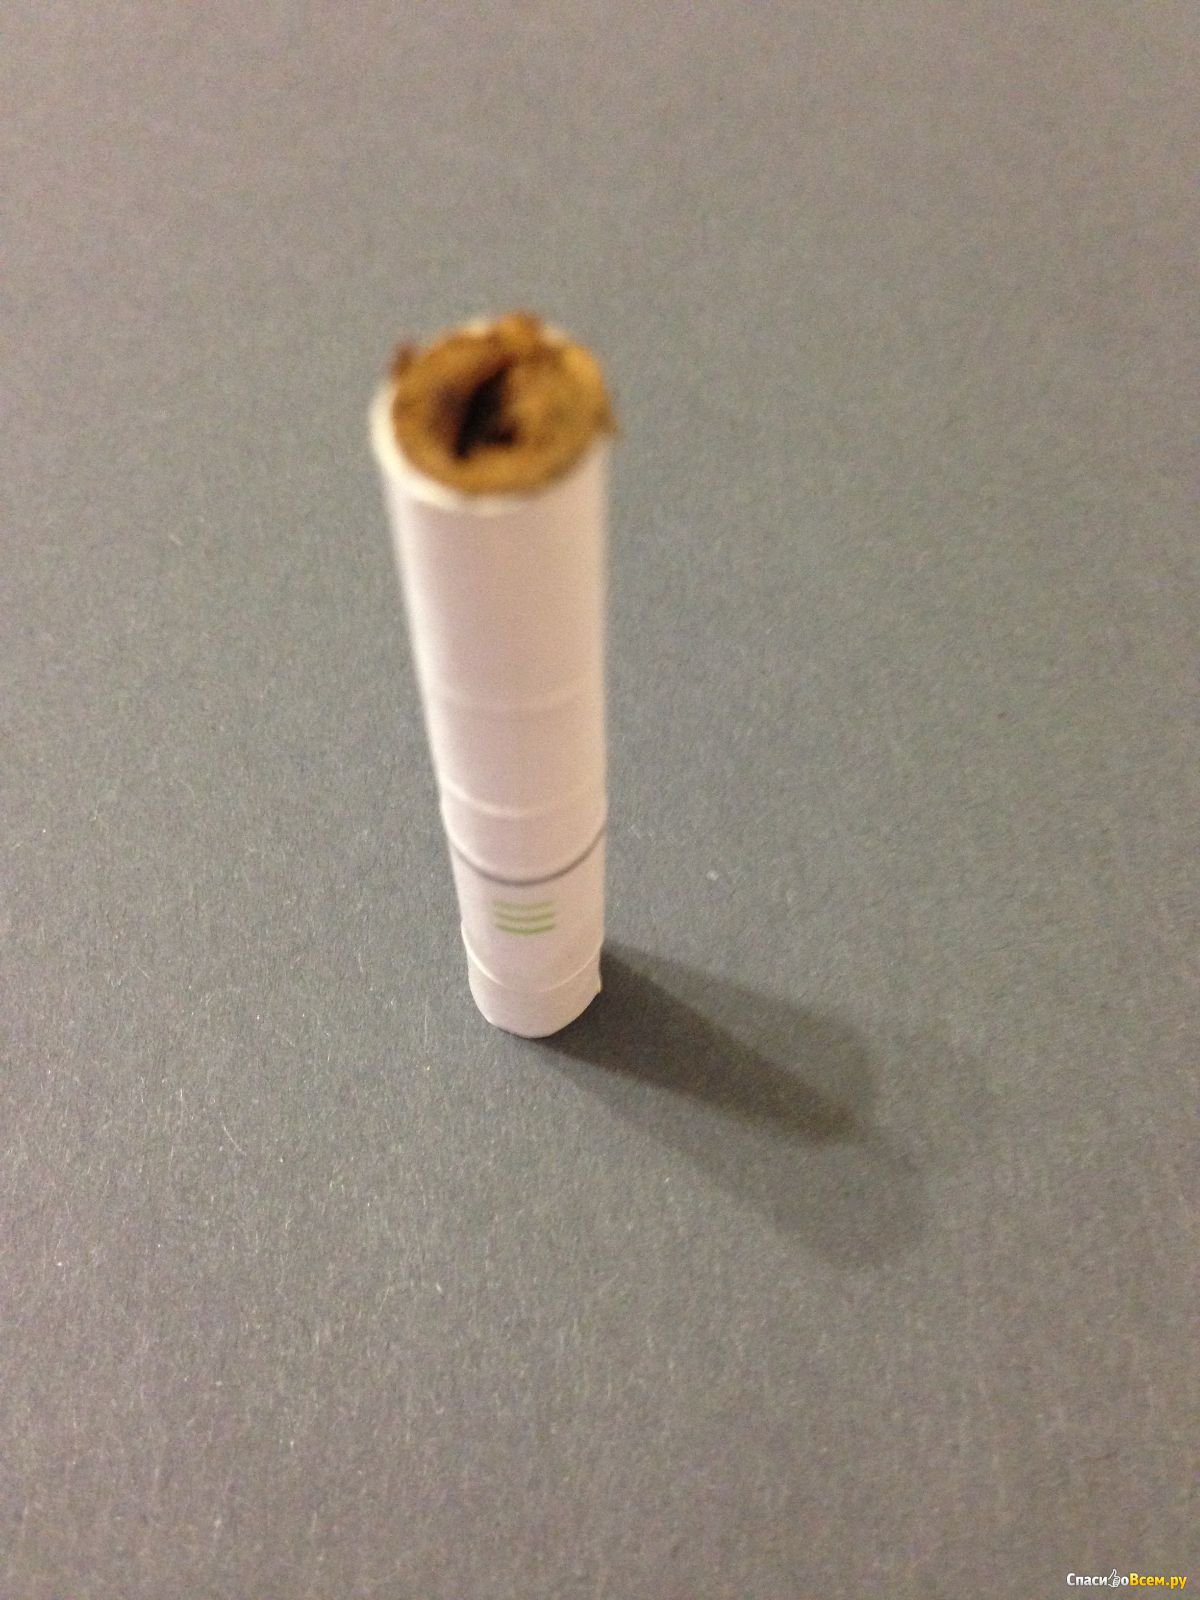 Стики горят. Philip Morris IQOS. Philip Morris электронные сигареты. Окурок айкос. Стик айкос после использования.